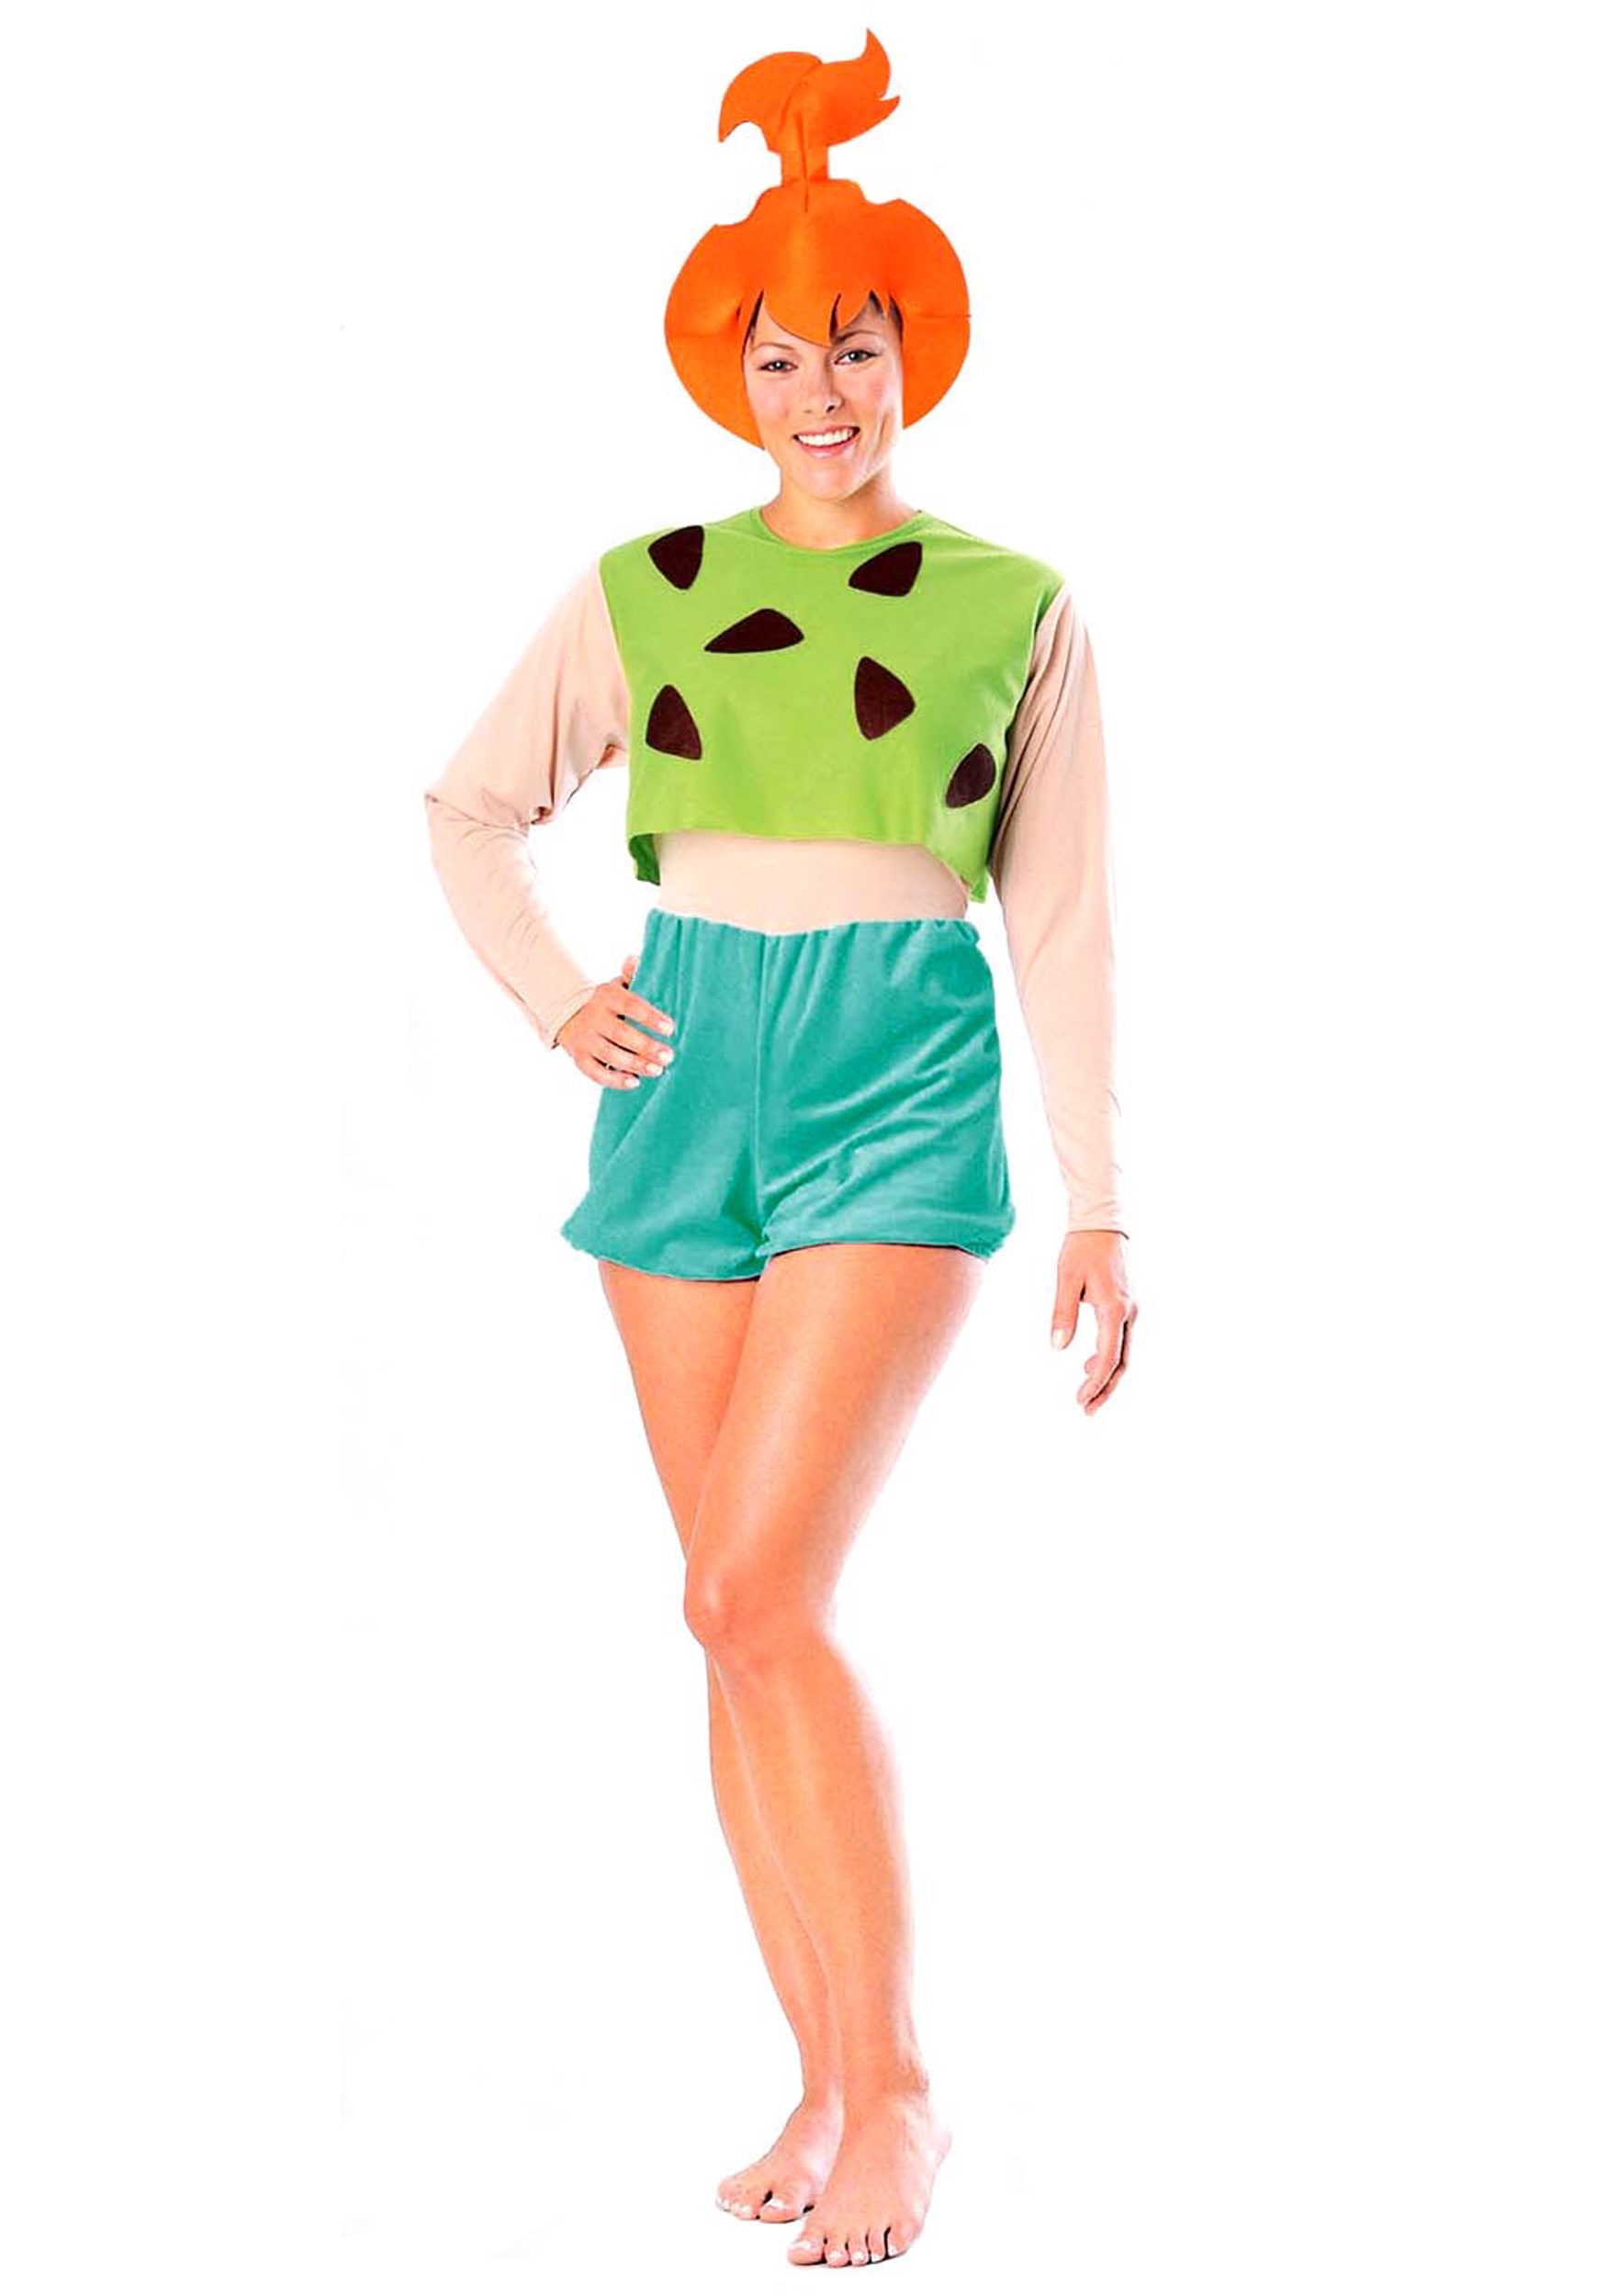 Pebbles Flintstone Adult Costume - Halloween Costume Ideas 2022.